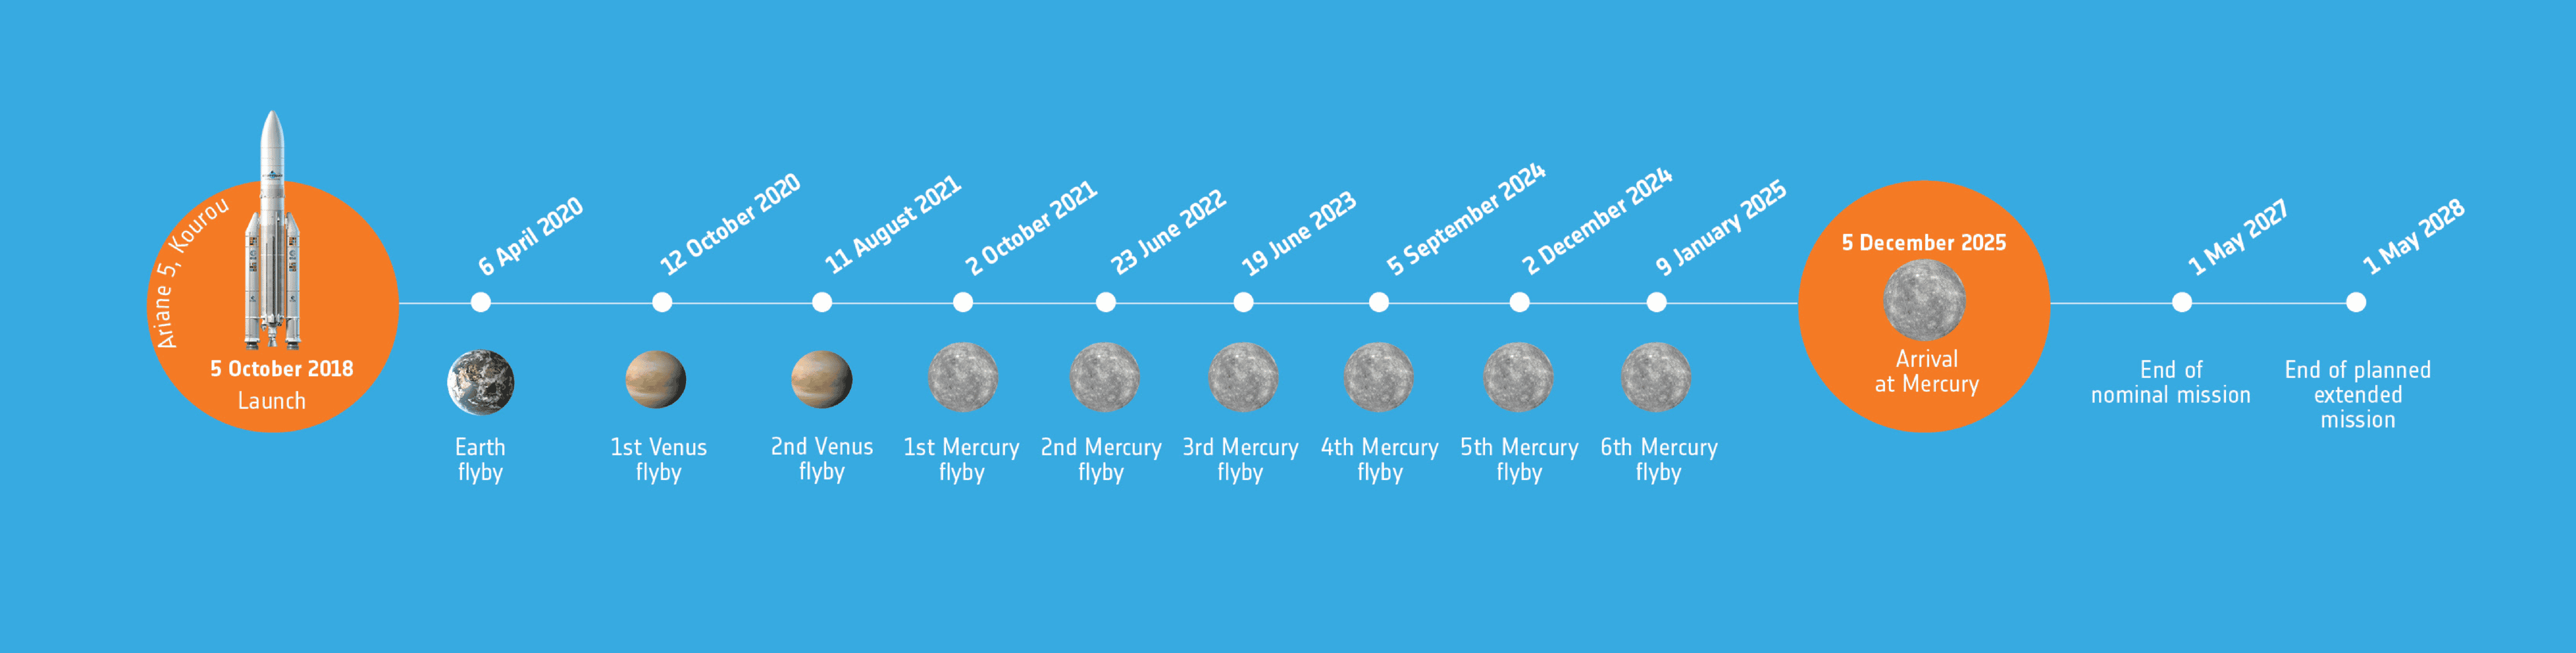 BepiColombo mission timeline